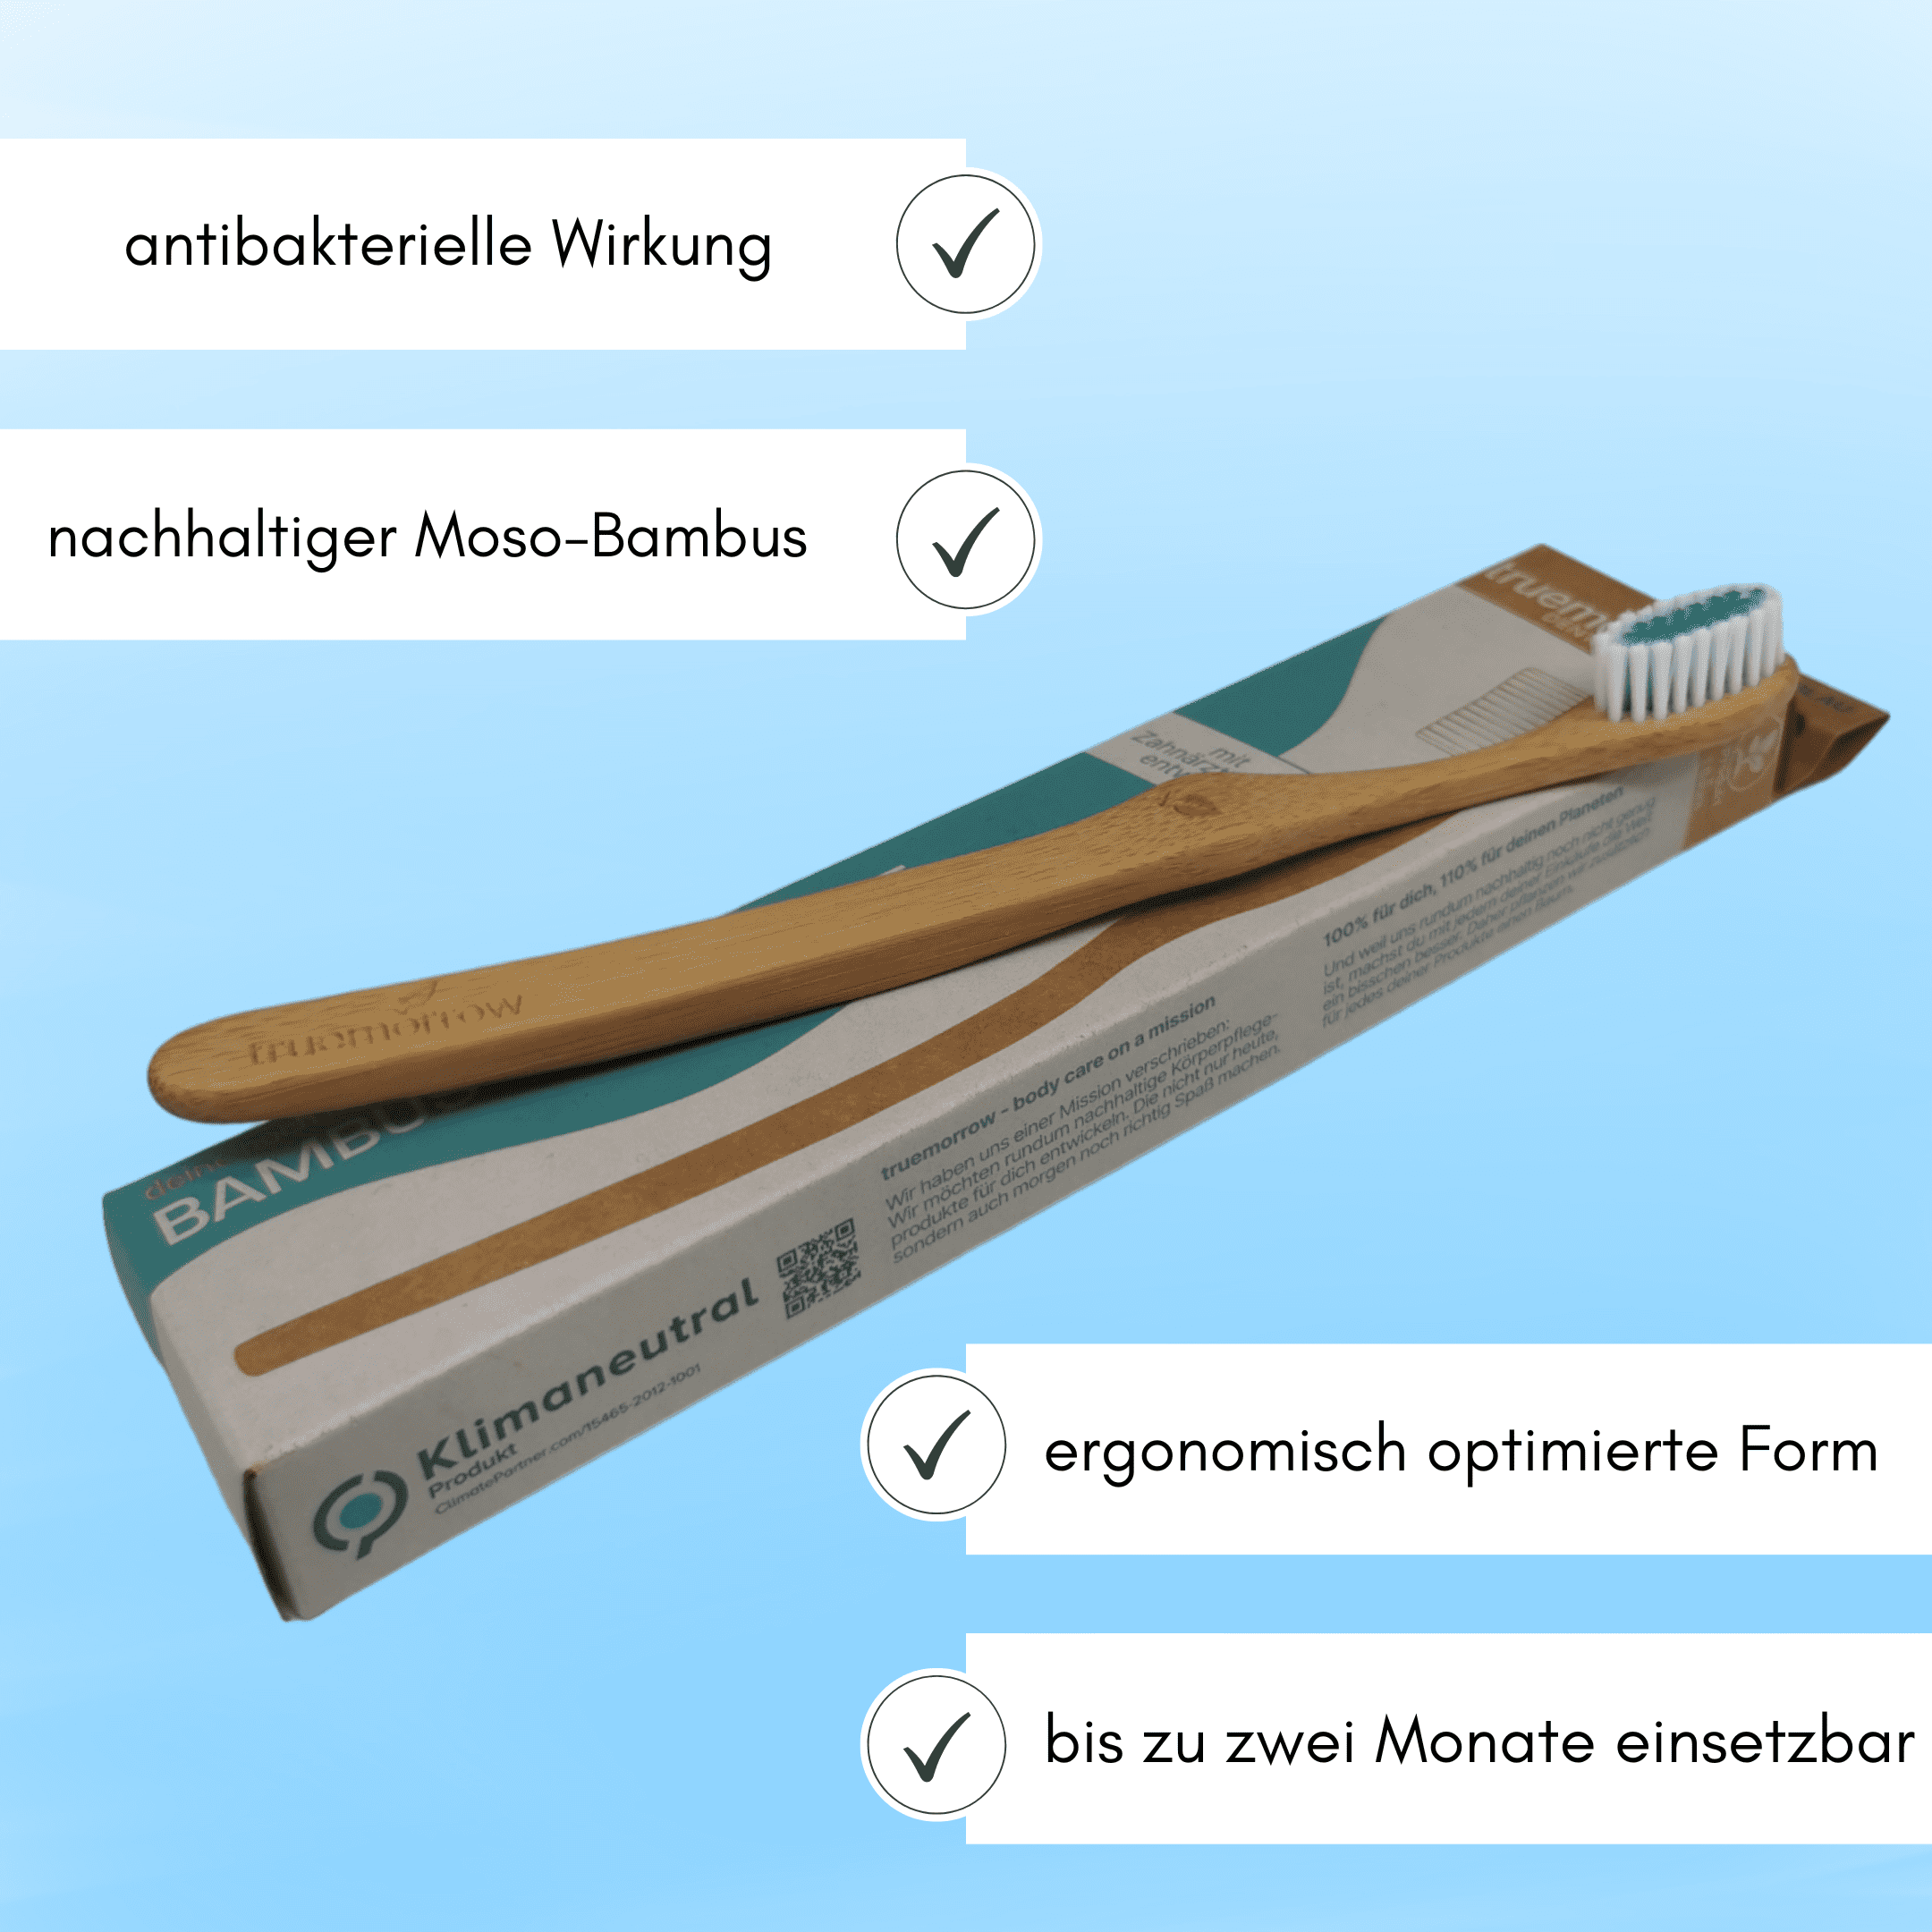 truemorrow Bambus Zahnbürste mit nützlichen Details vor blauem Hintergrund